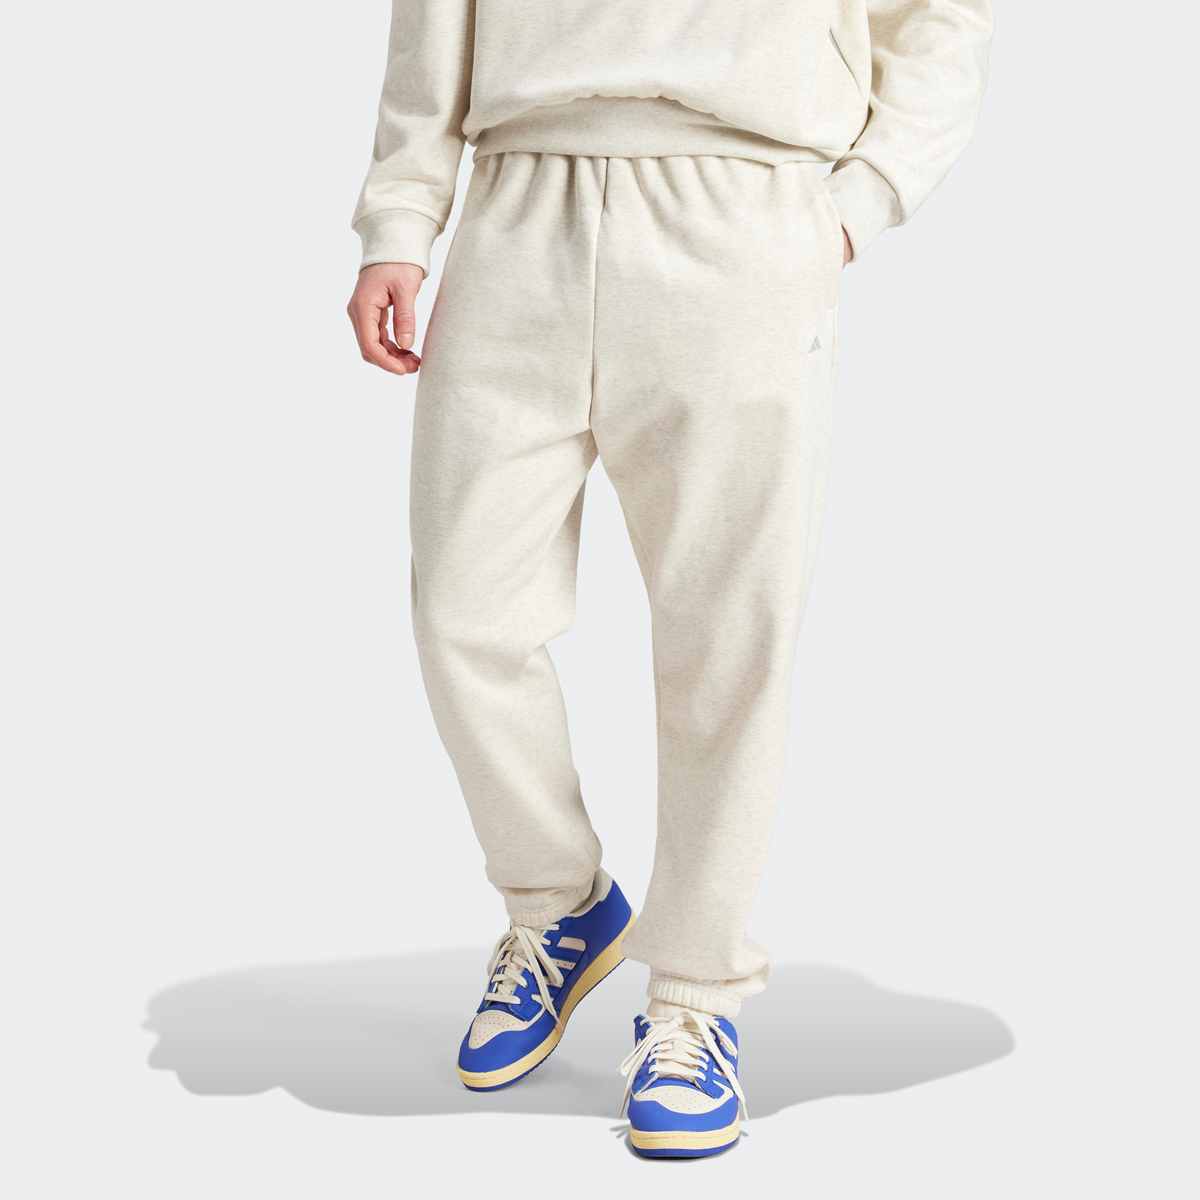 Adidas Originals Basketball Fleece Jogging Broek Trainingsbroeken Heren cream white mel. maat: XL beschikbare maaten:S M L XL